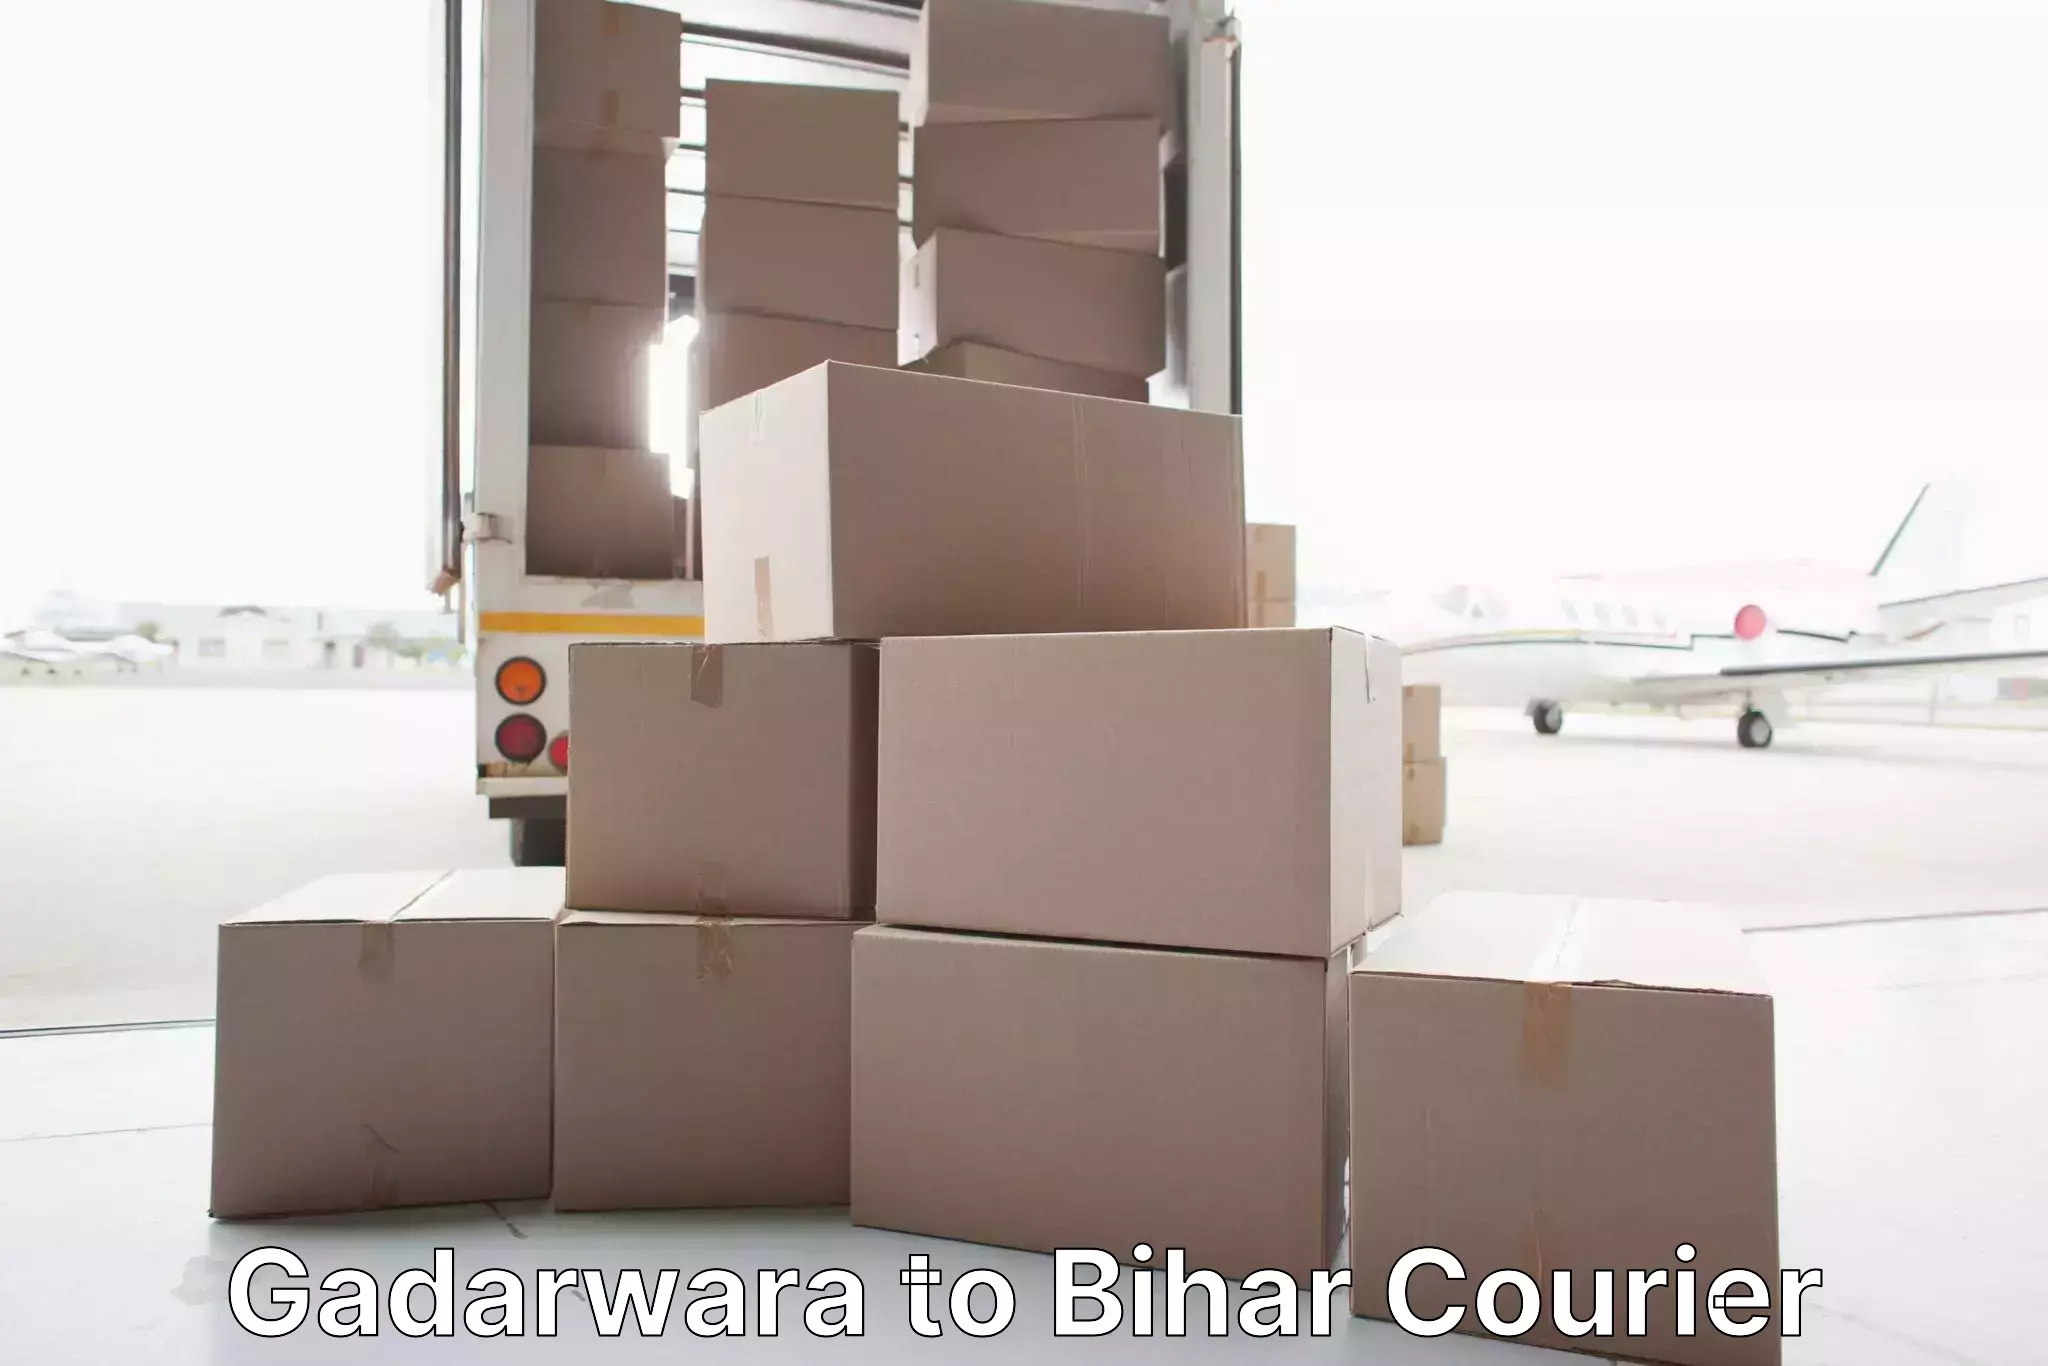 Efficient packing and moving Gadarwara to Brahmapur